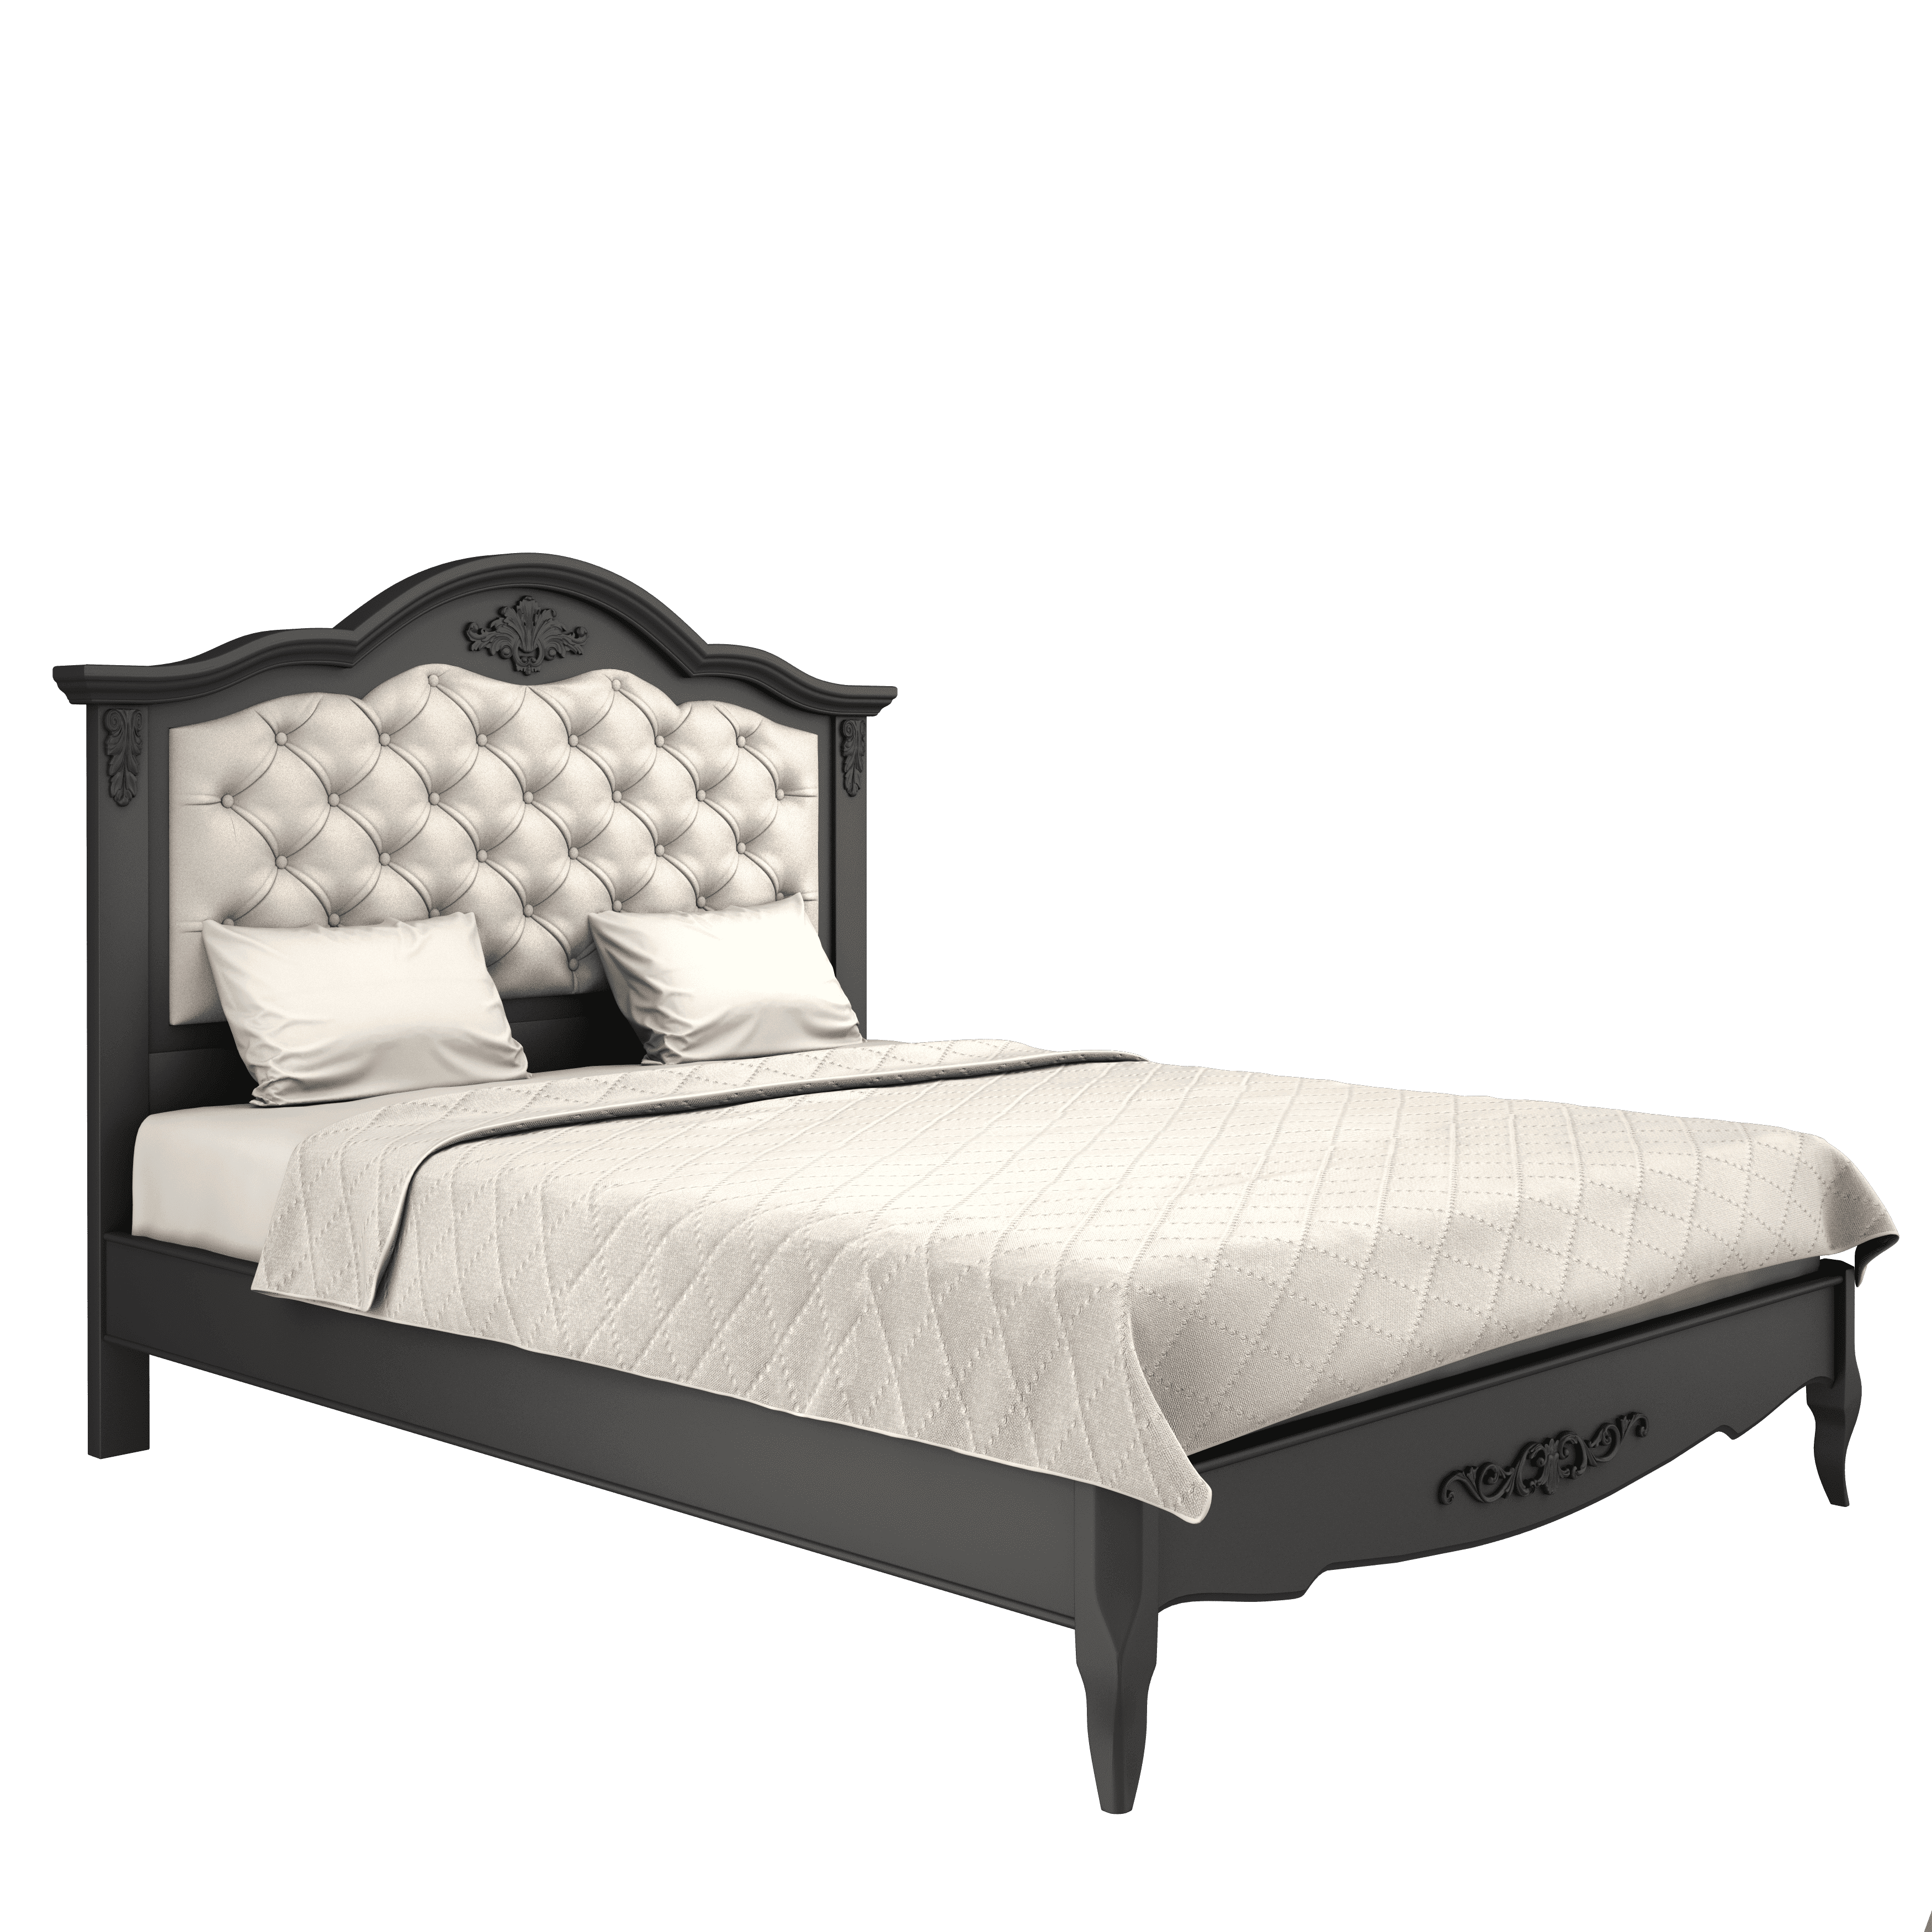 Кровать Aletan Provence, двуспальная, 180x200 см, цвет: черный (B218BL)B218BL